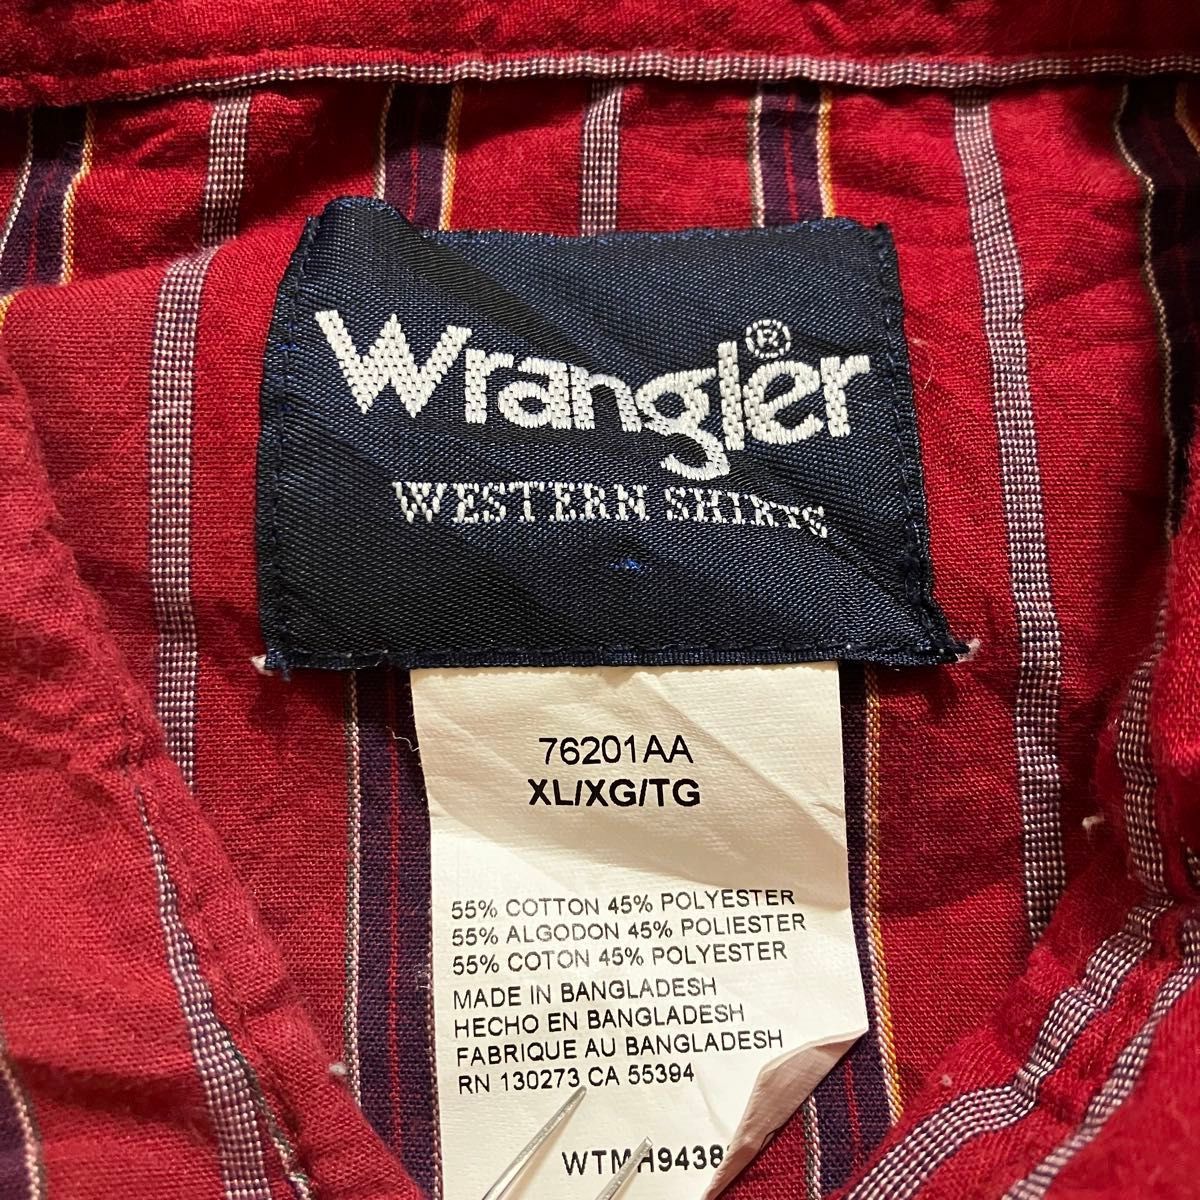 Wrangler ウエスタンシャツ ワークシャツ XL メンズ アメカジ ラングラー ボーダー 古着 半袖 トップス